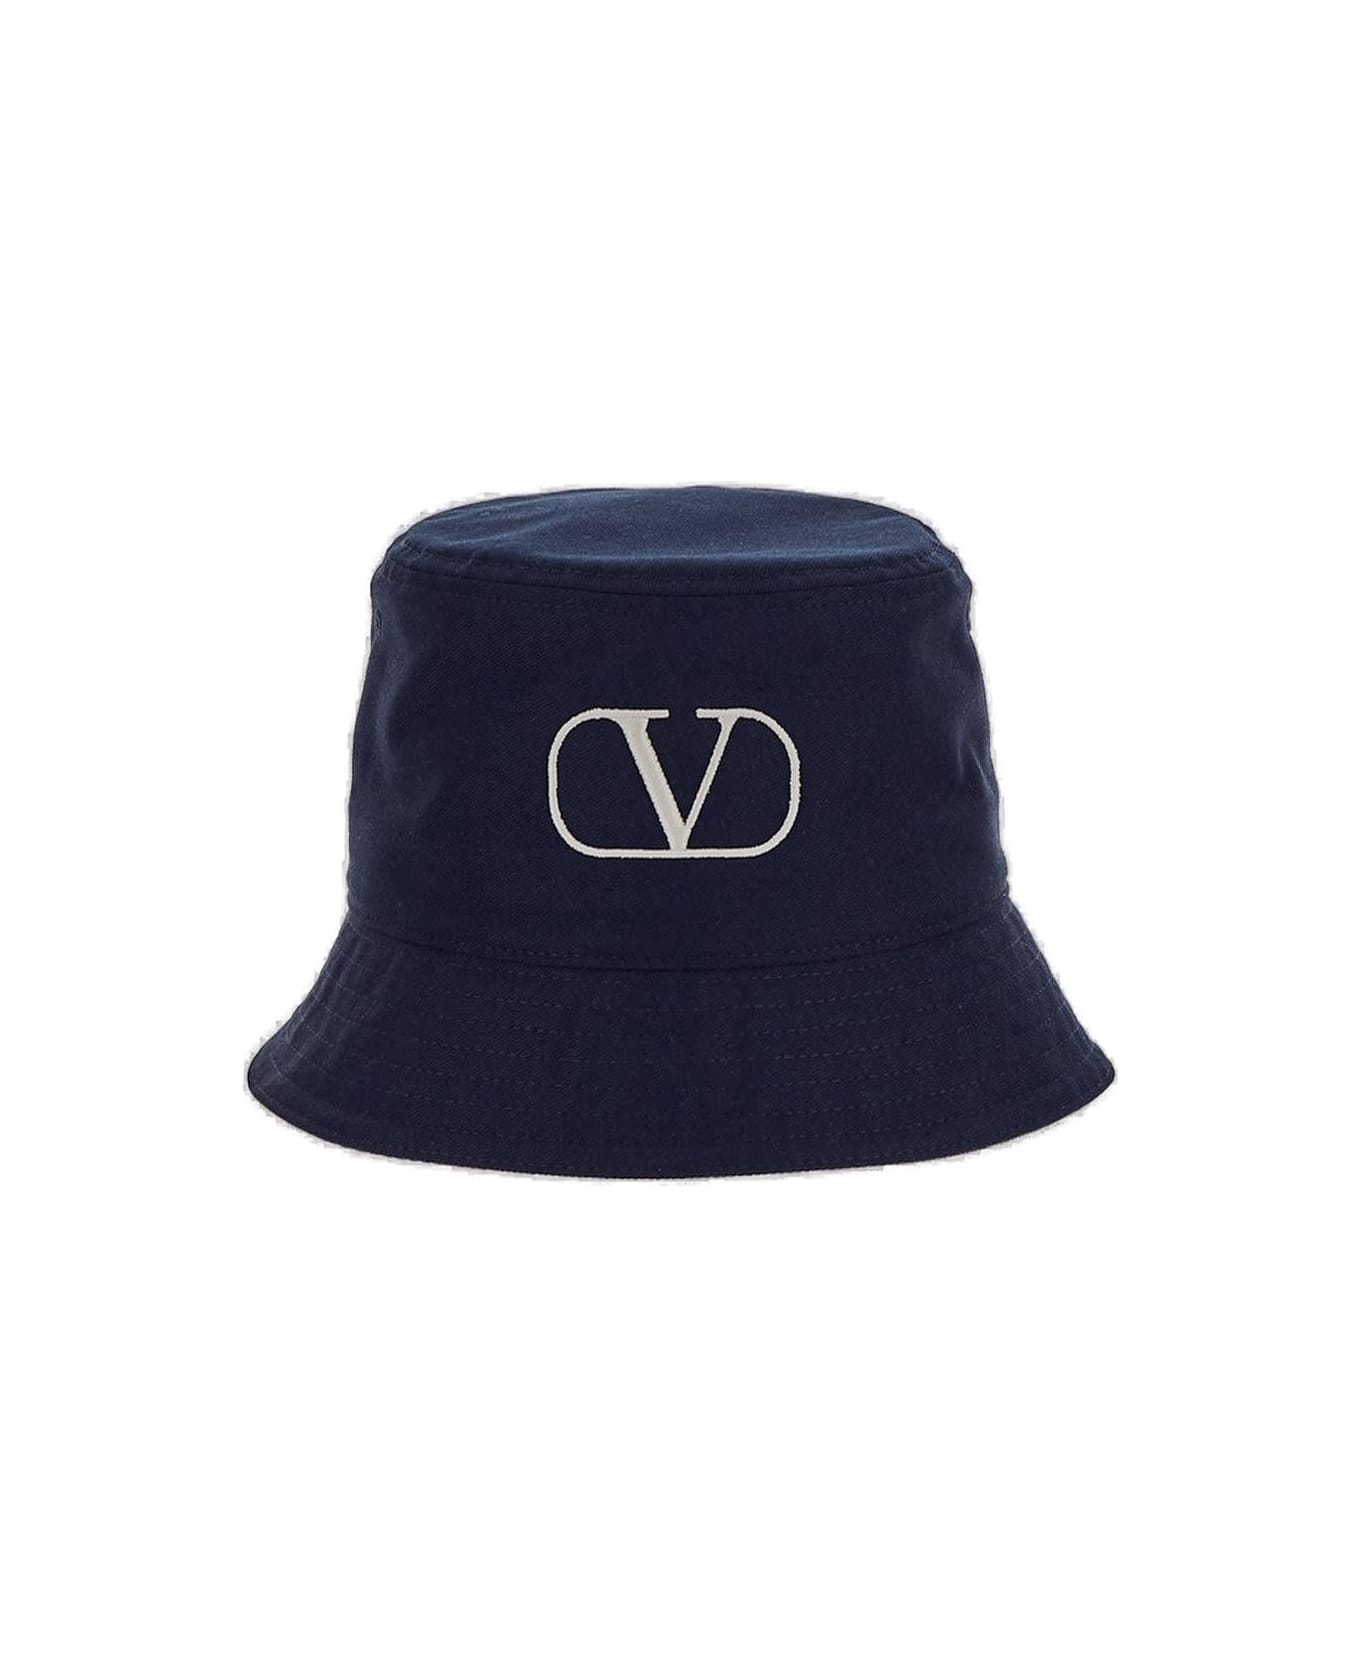 Valentino Garavani Garavani Logo Embroidered Bucket Hat - NAVY 帽子